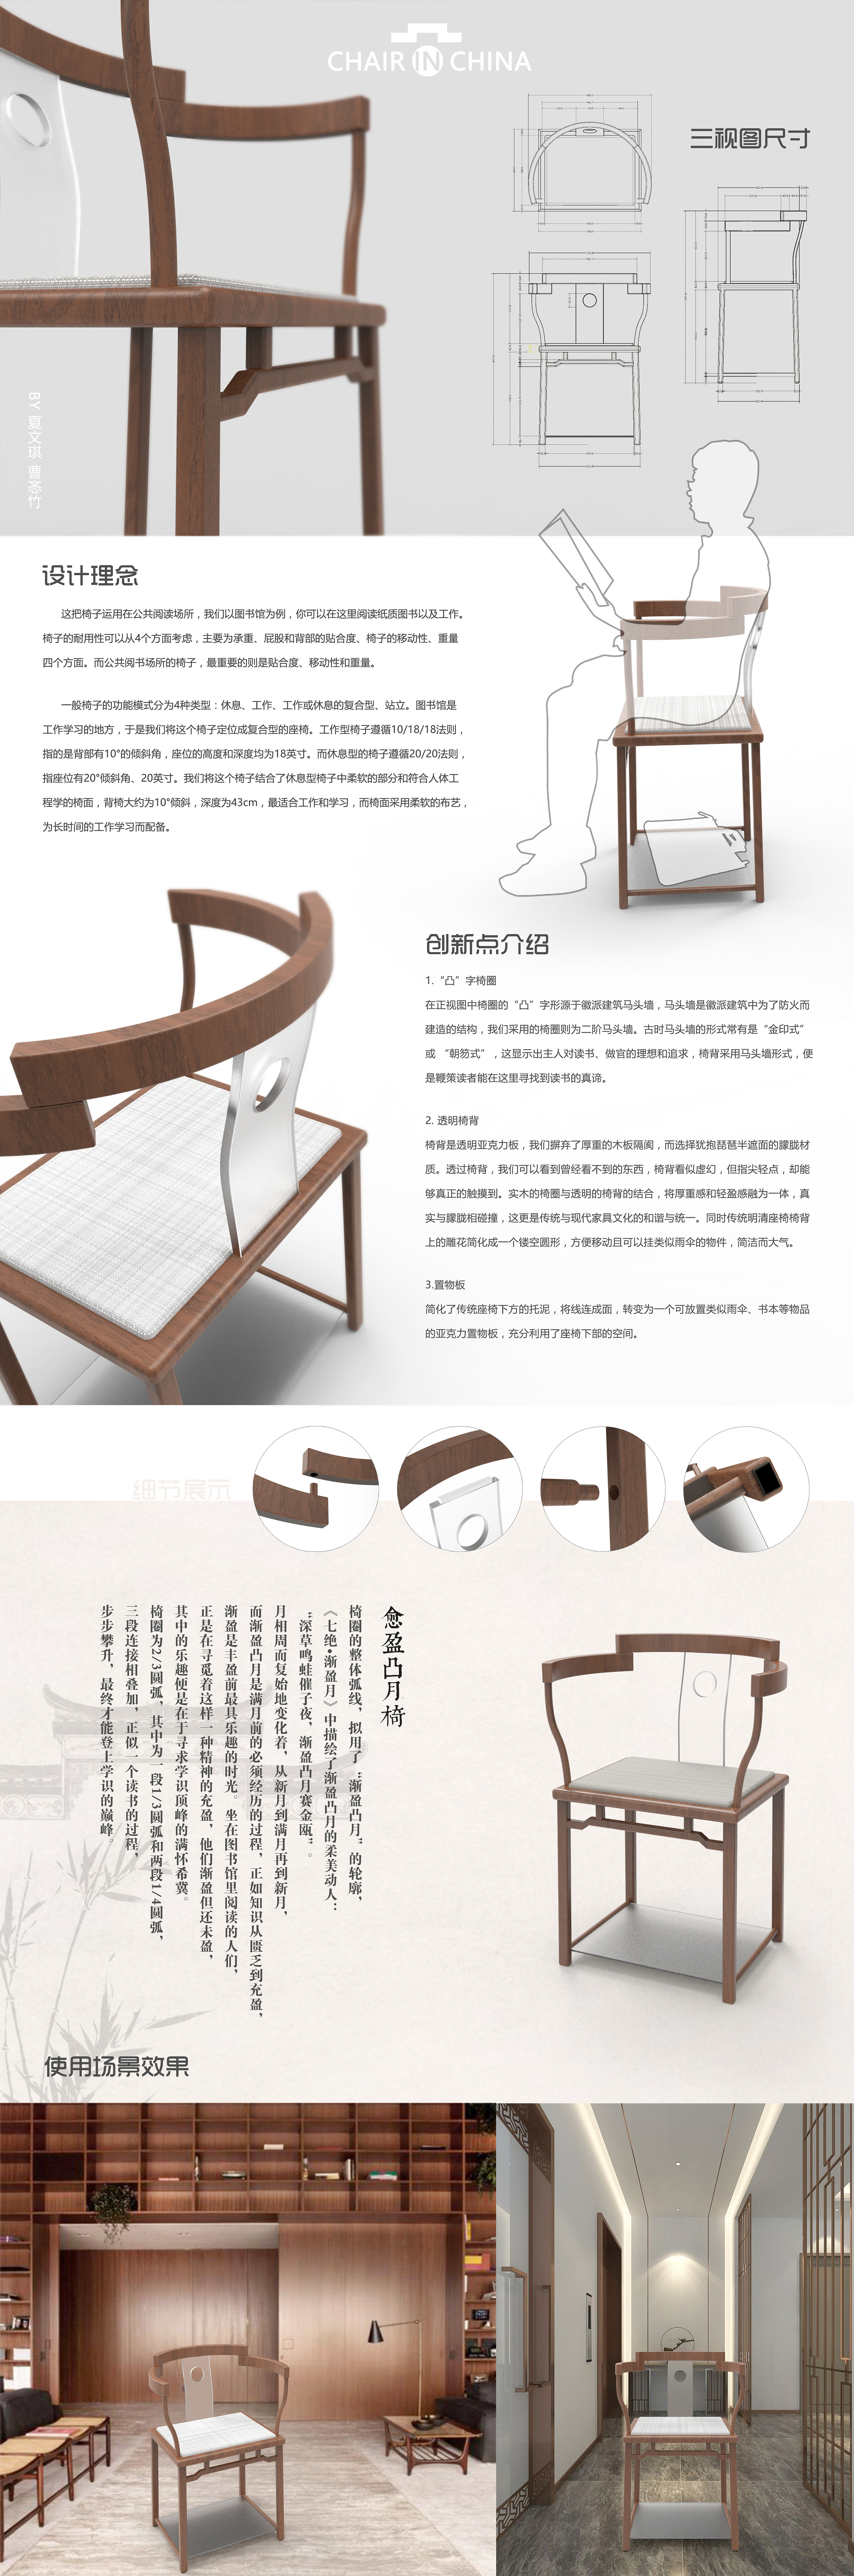 椅子三视图设计说明图片